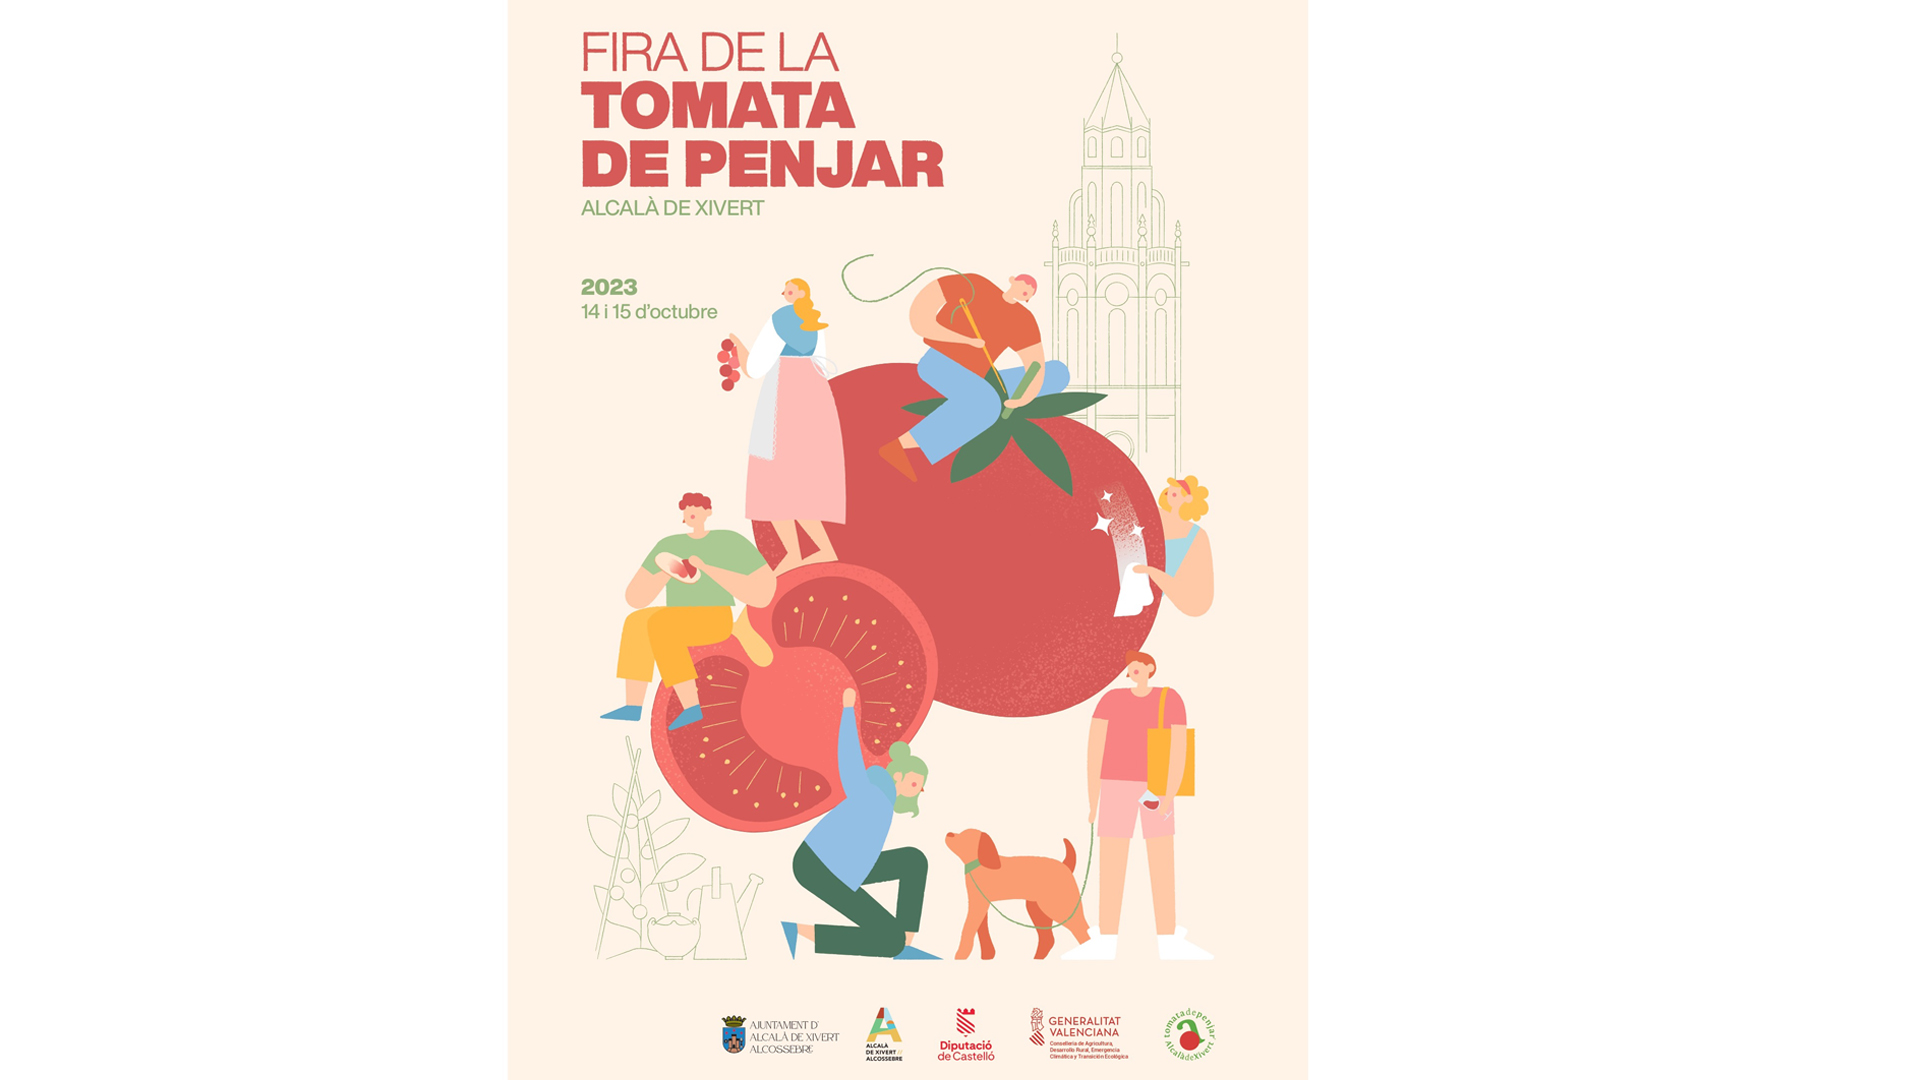 La Fira de la Tomata d'Alcalà de Xivert se celebrarà els dies 14 i 15 d'octubre